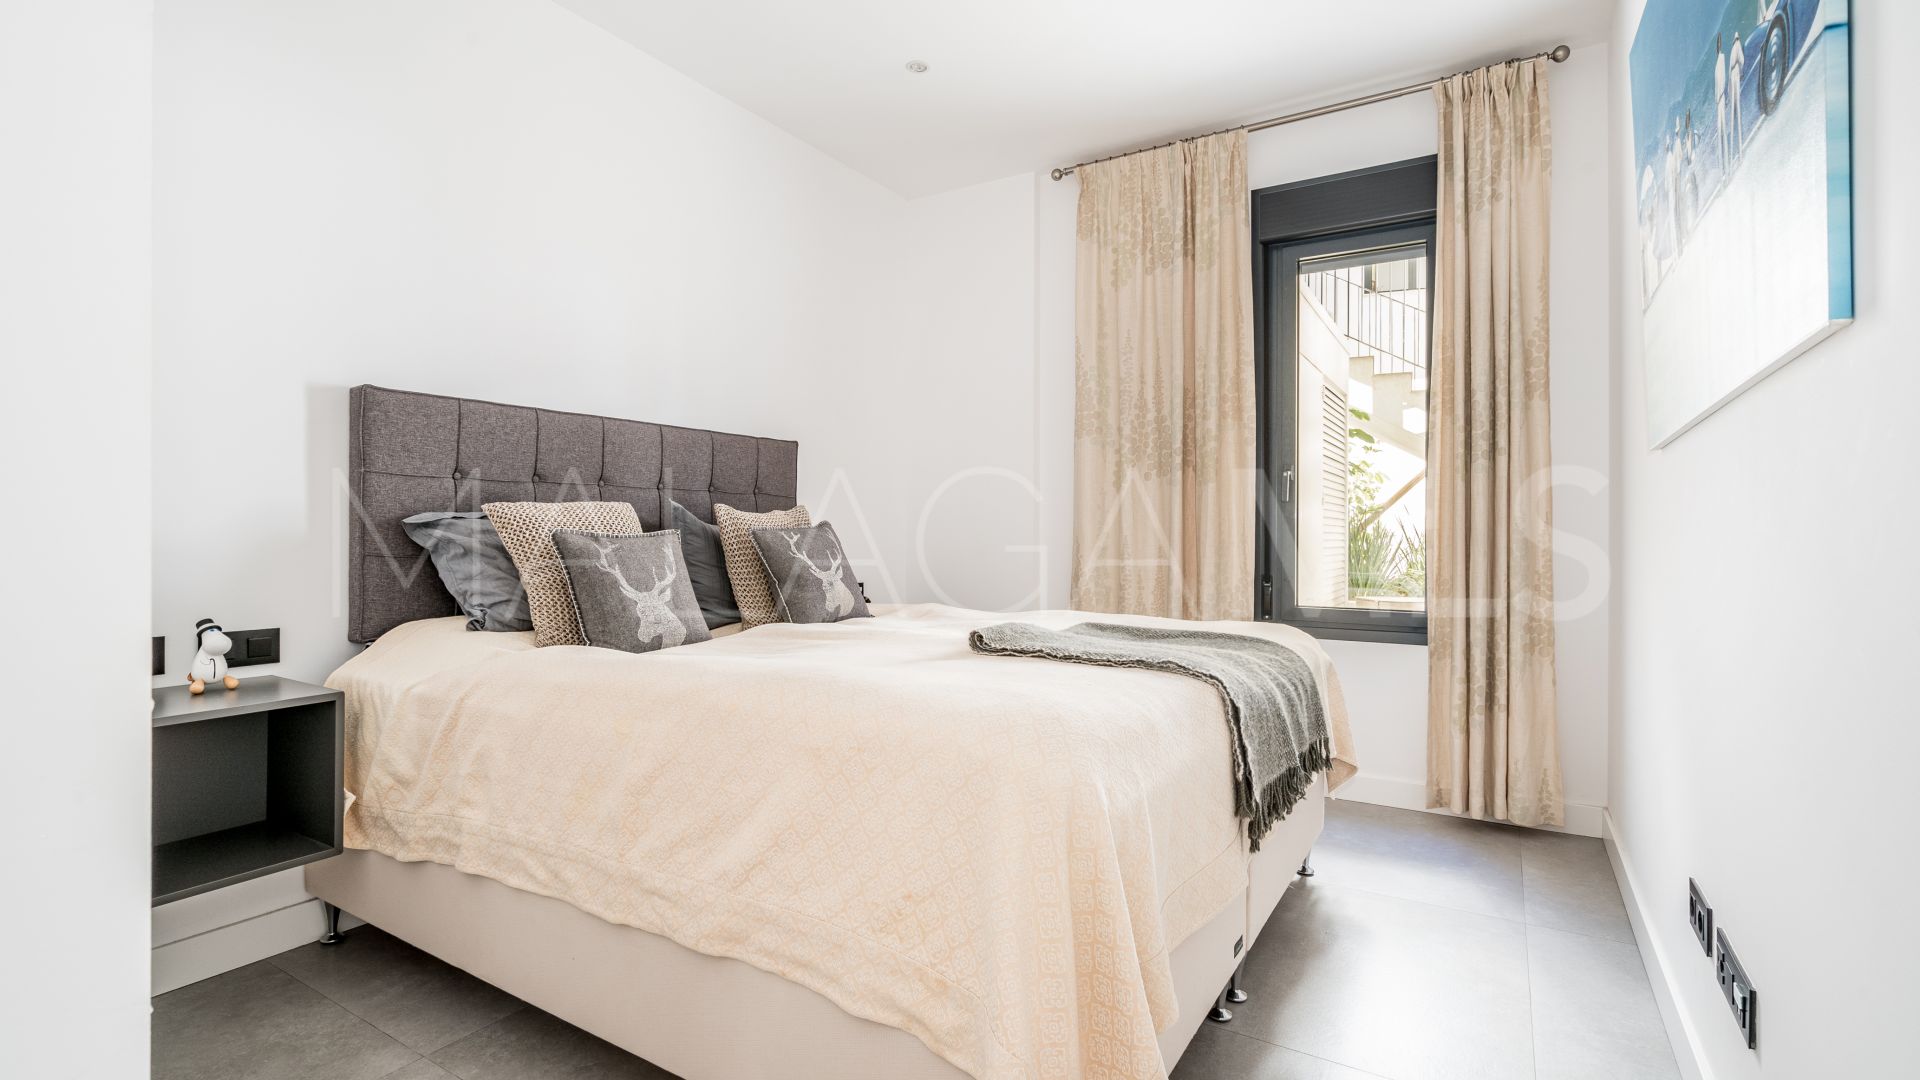 2 bedrooms Mirador de Estepona Hills ground floor apartment for sale